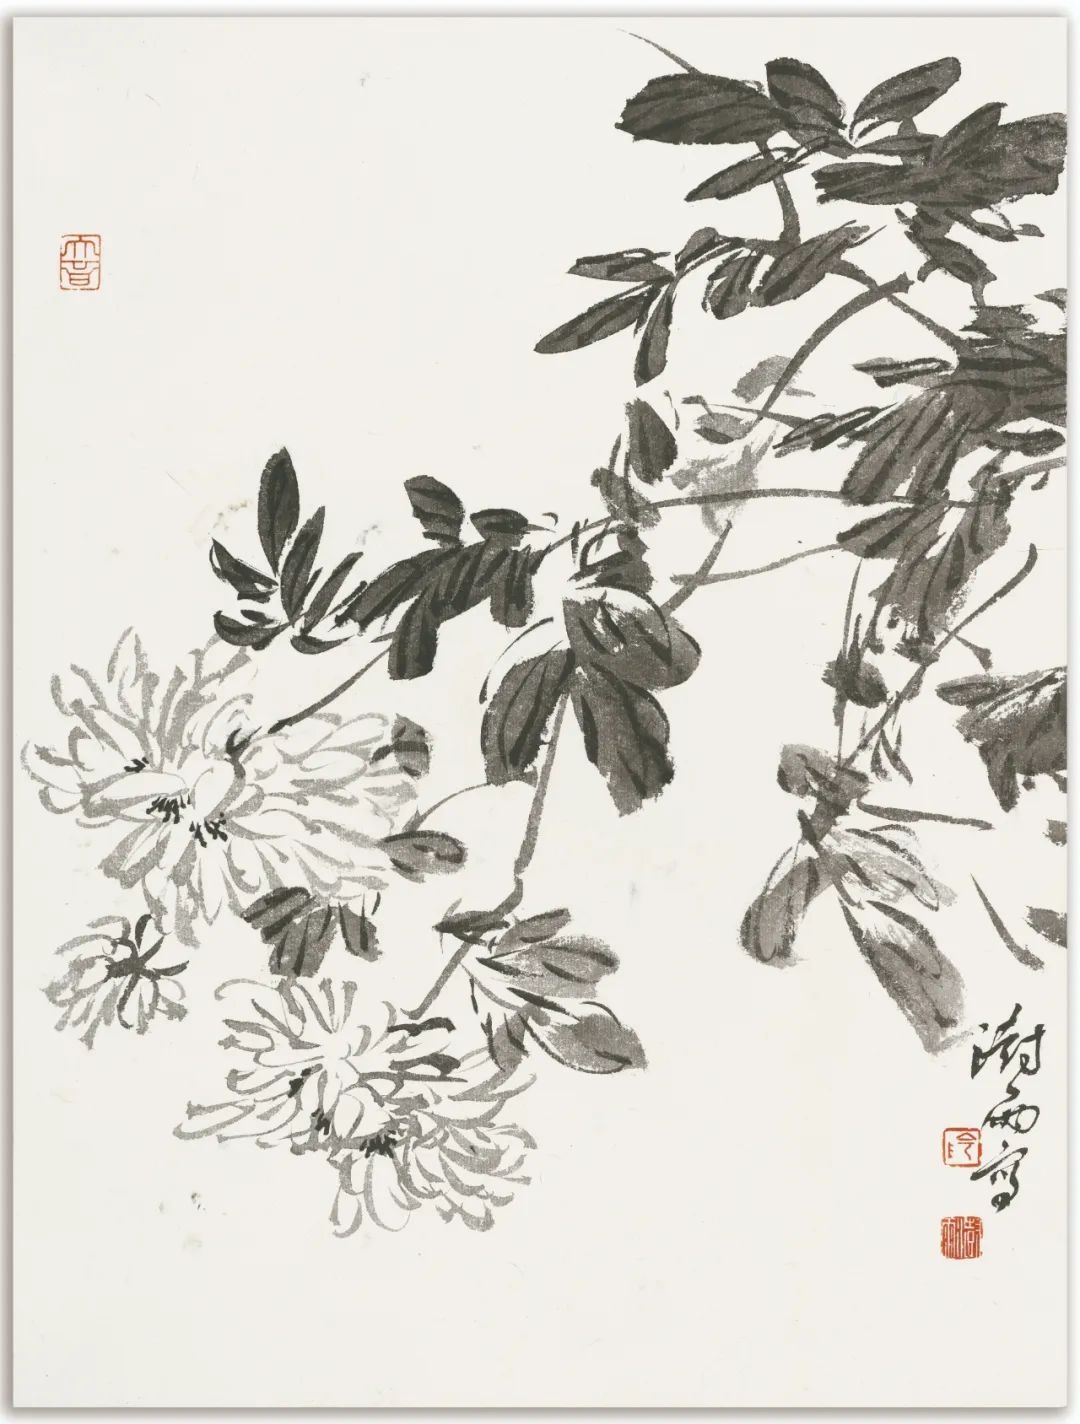 阴澎雨丨重思写意——70一代中国画学术研究邀请展